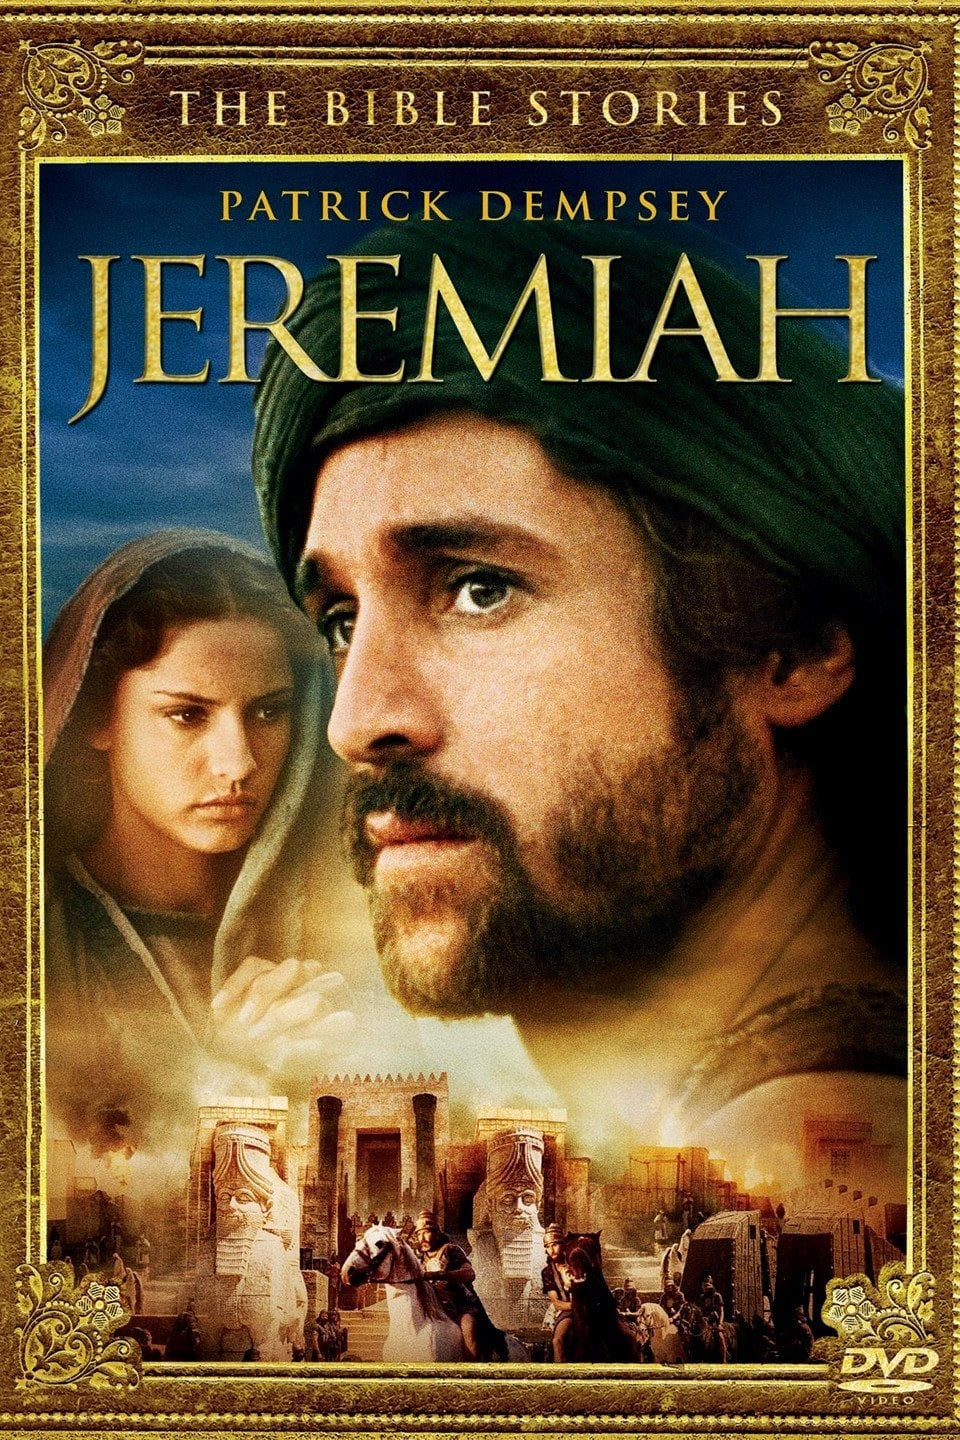 EN - Jeremiah (1998)